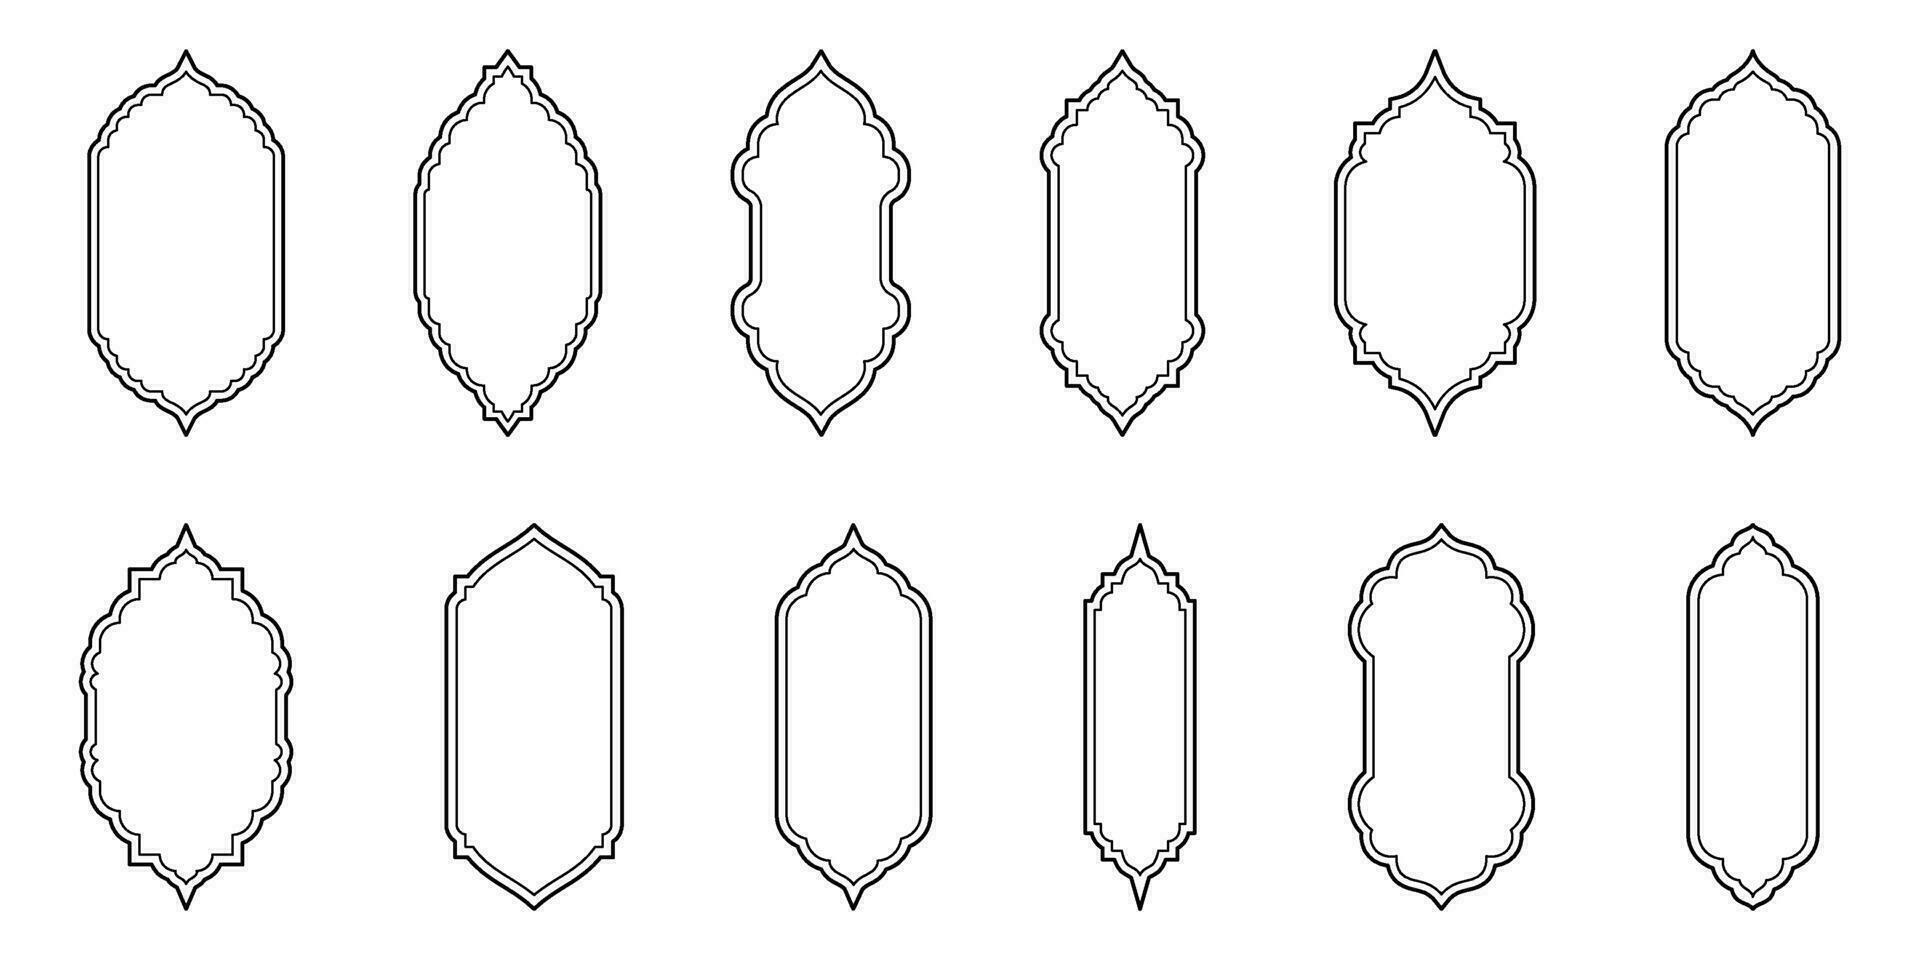 Islamitisch venster lijn vorm verzameling. Arabisch, moslim architectuur schets kader. traditioneel, oosters ontwerp vector